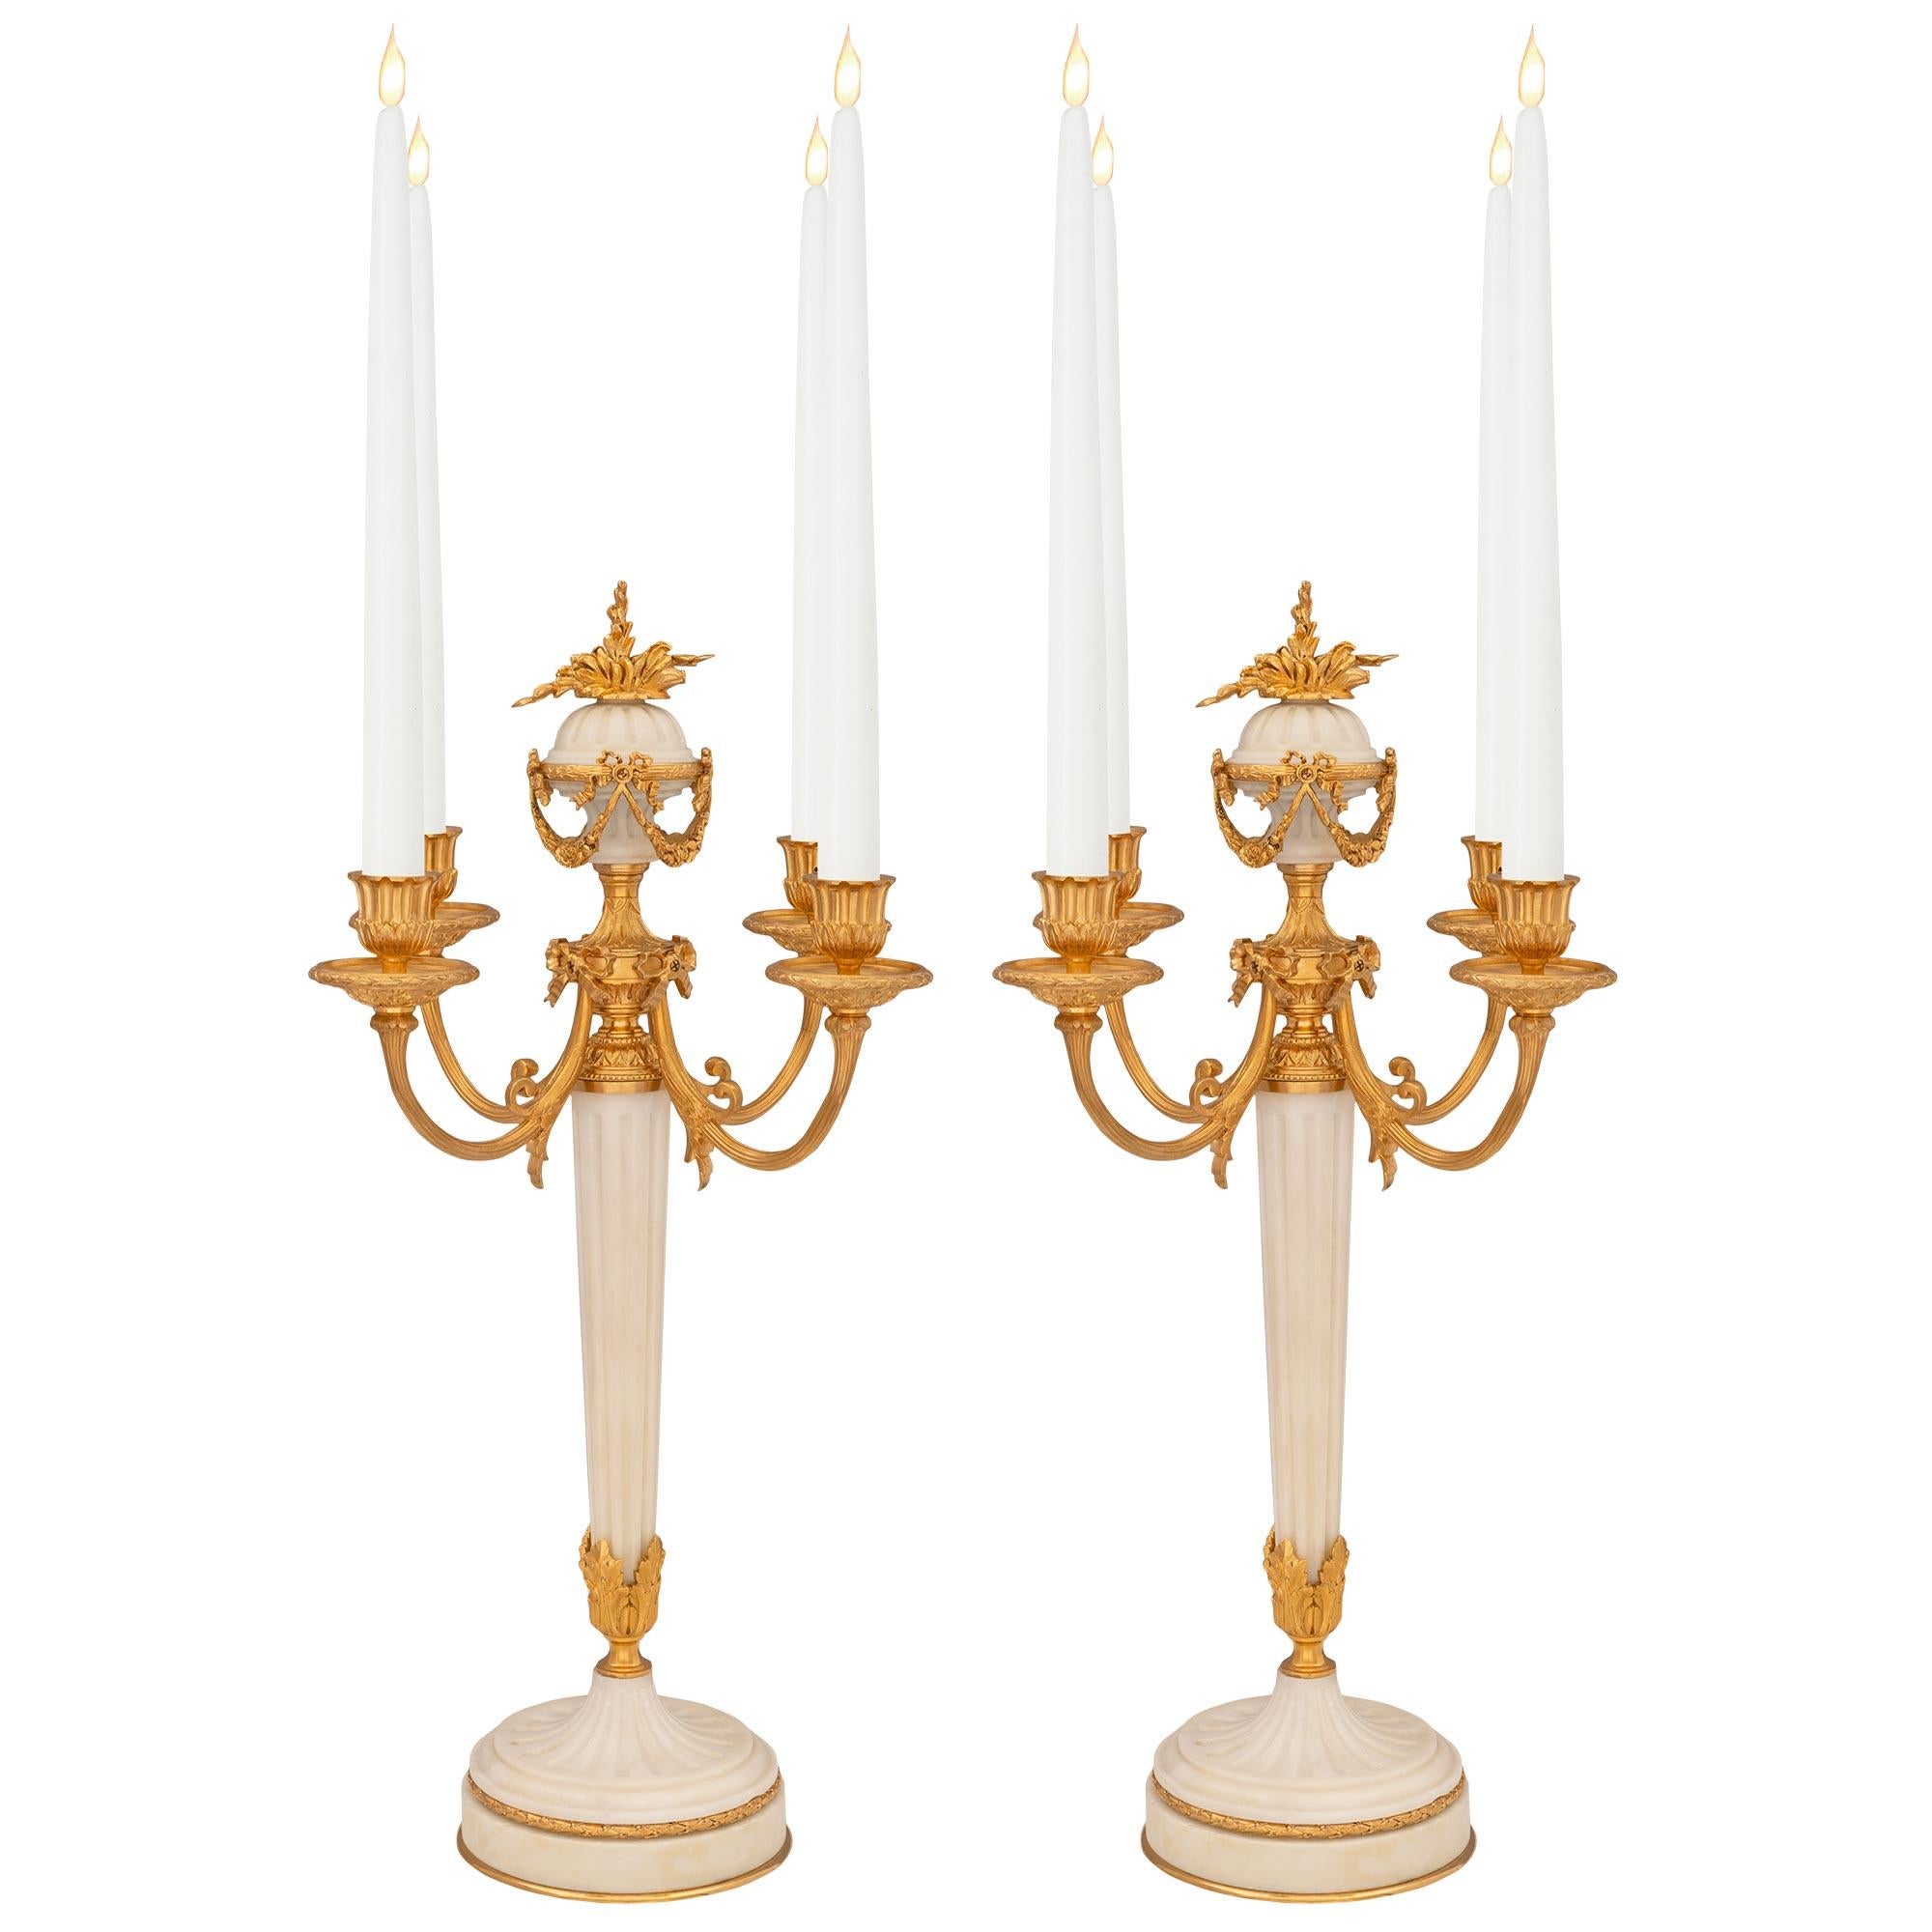 Paire de candélabres français de style Louis XVI du 19ème siècle en bronze doré et marbre